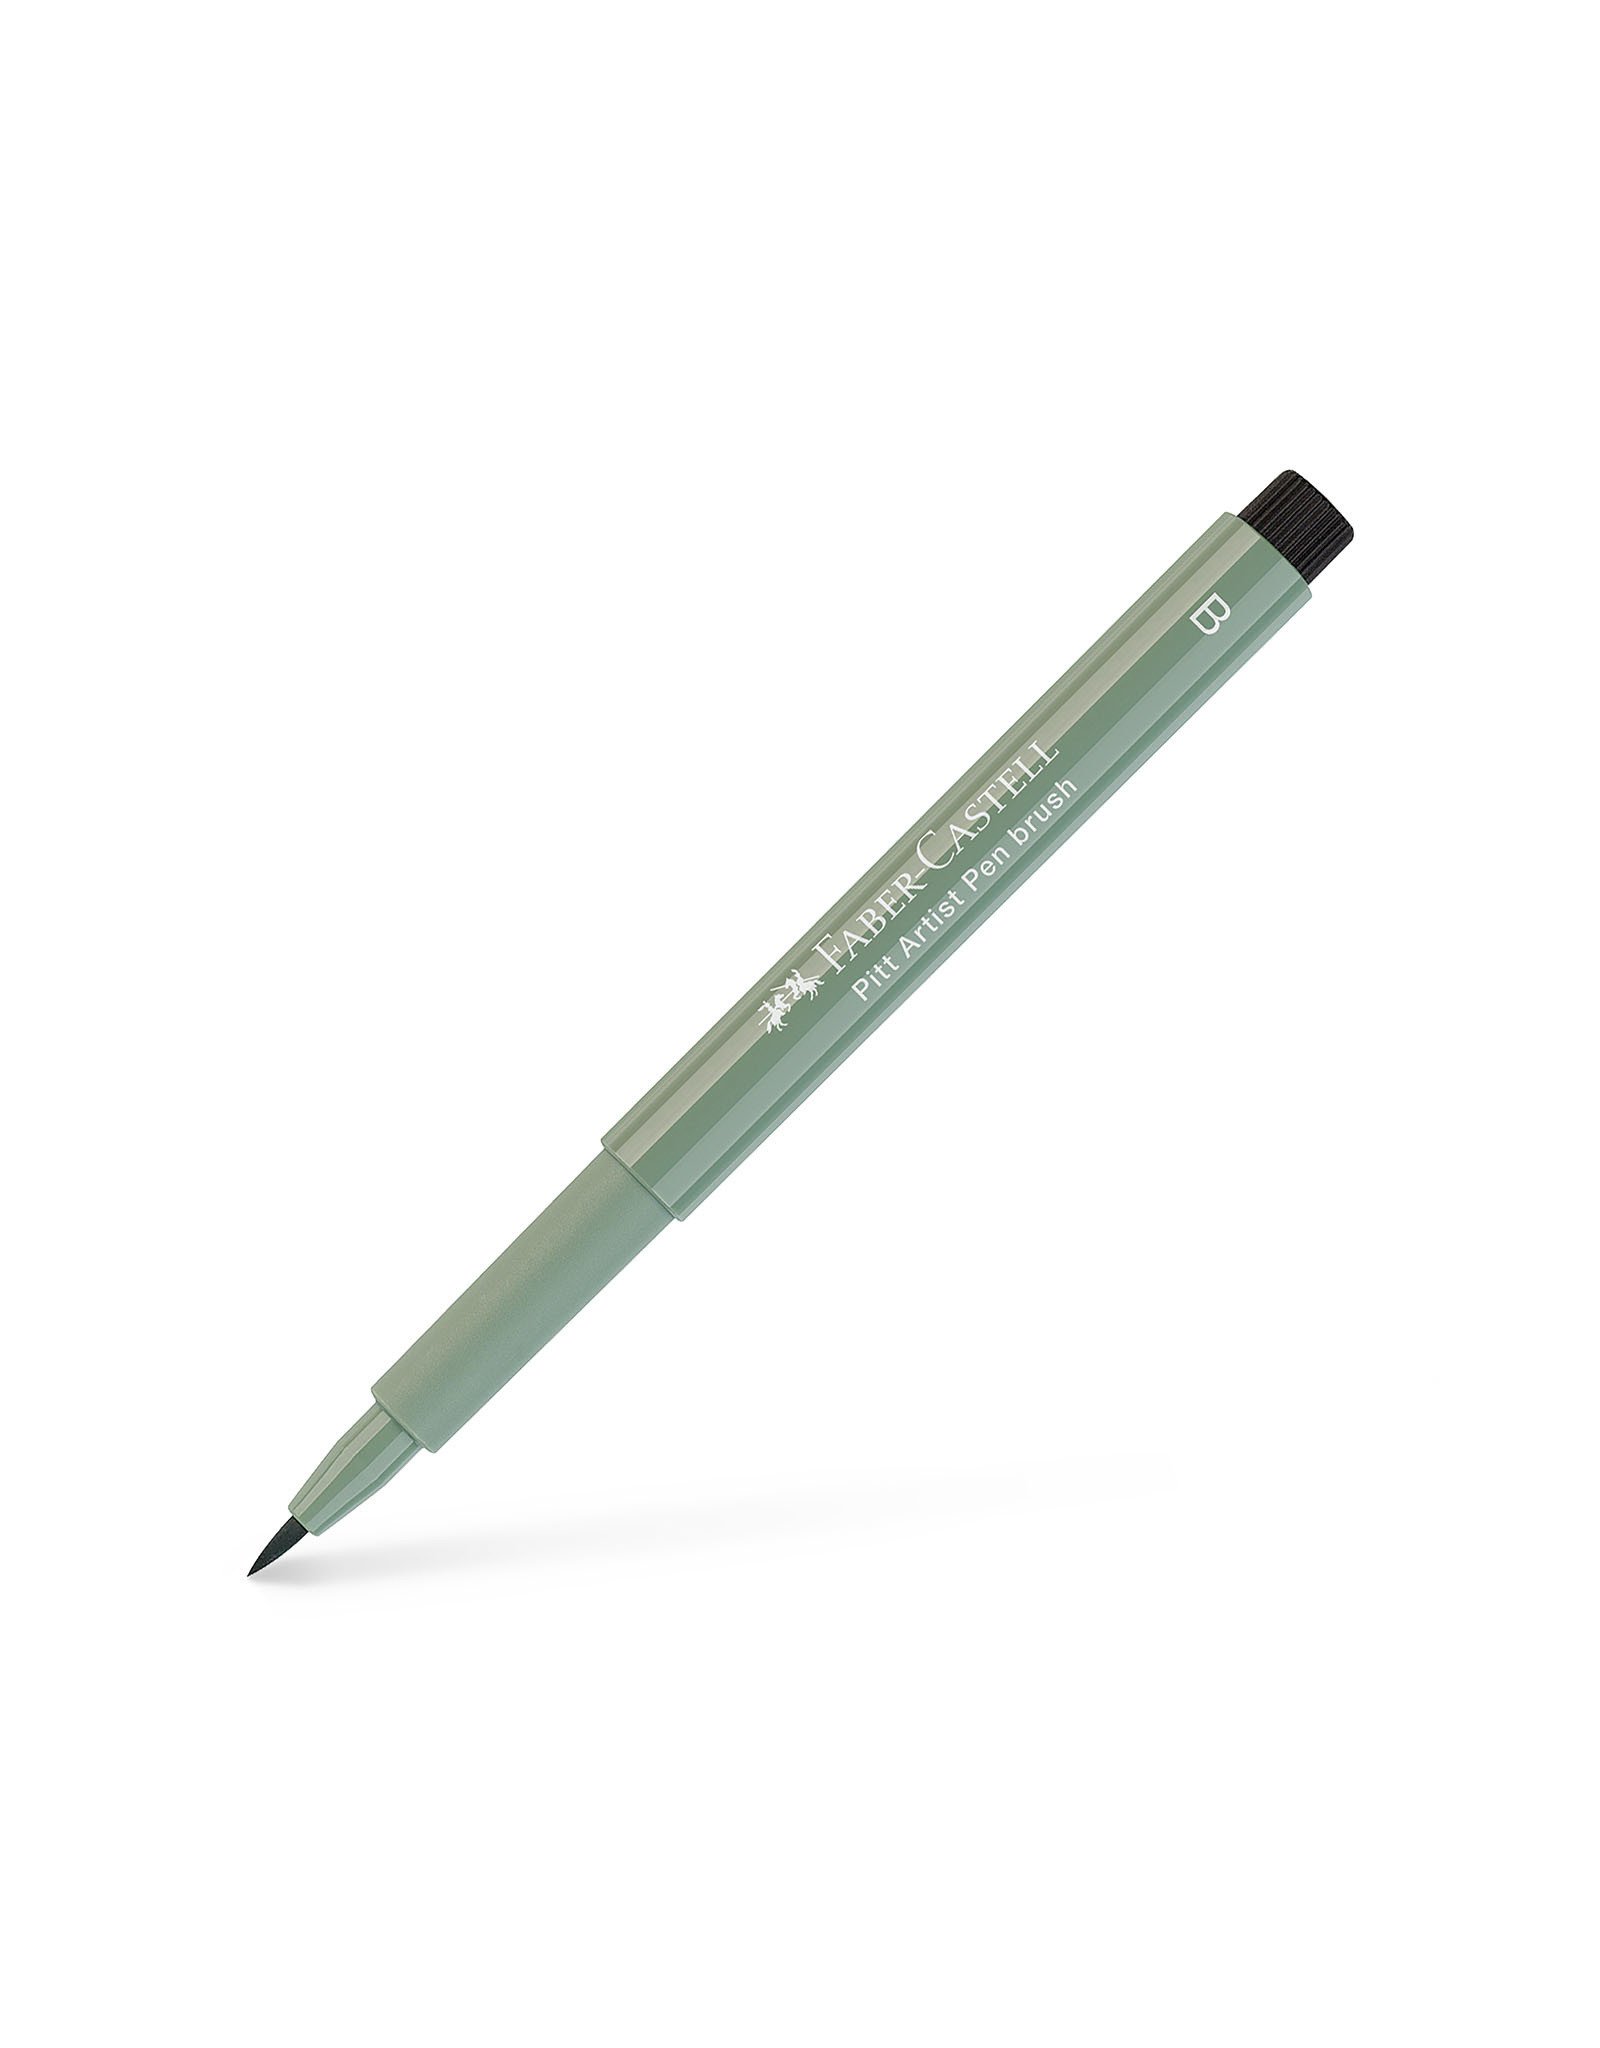 FABER-CASTELL Pitt Artist Pen, Brush, Earth Green